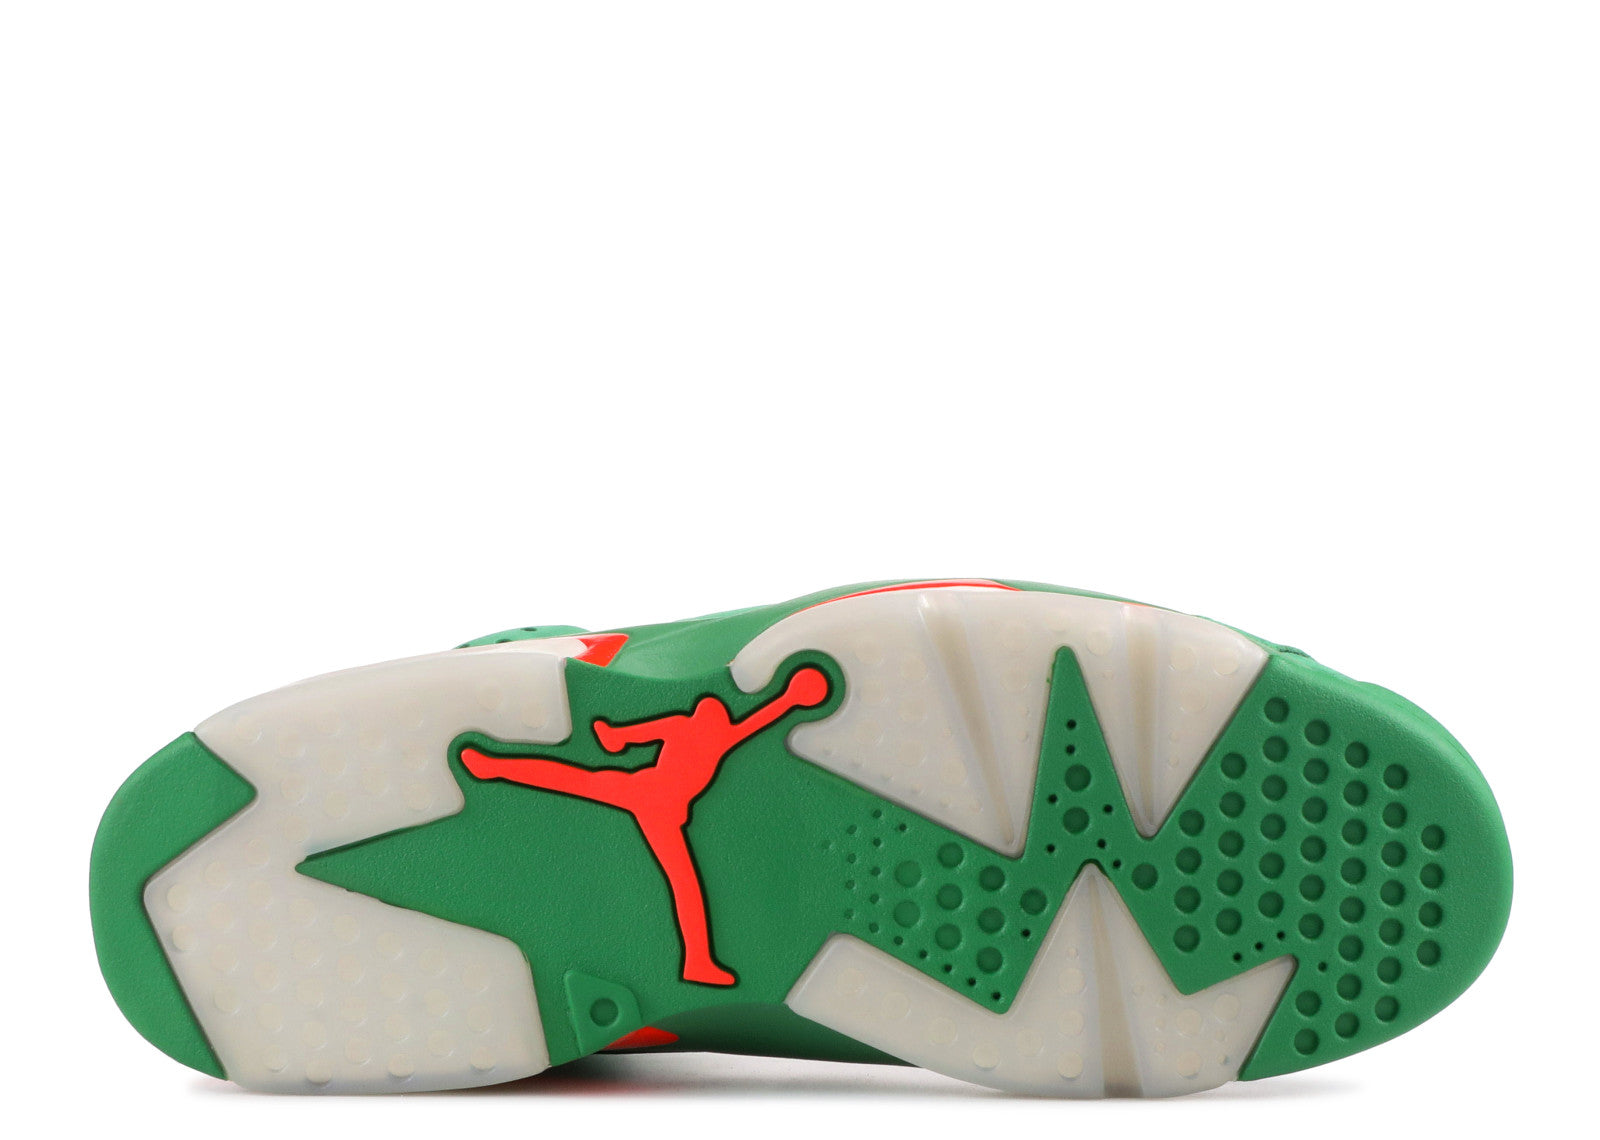 Nike Air Jordan 6 Retro NRG G8RD